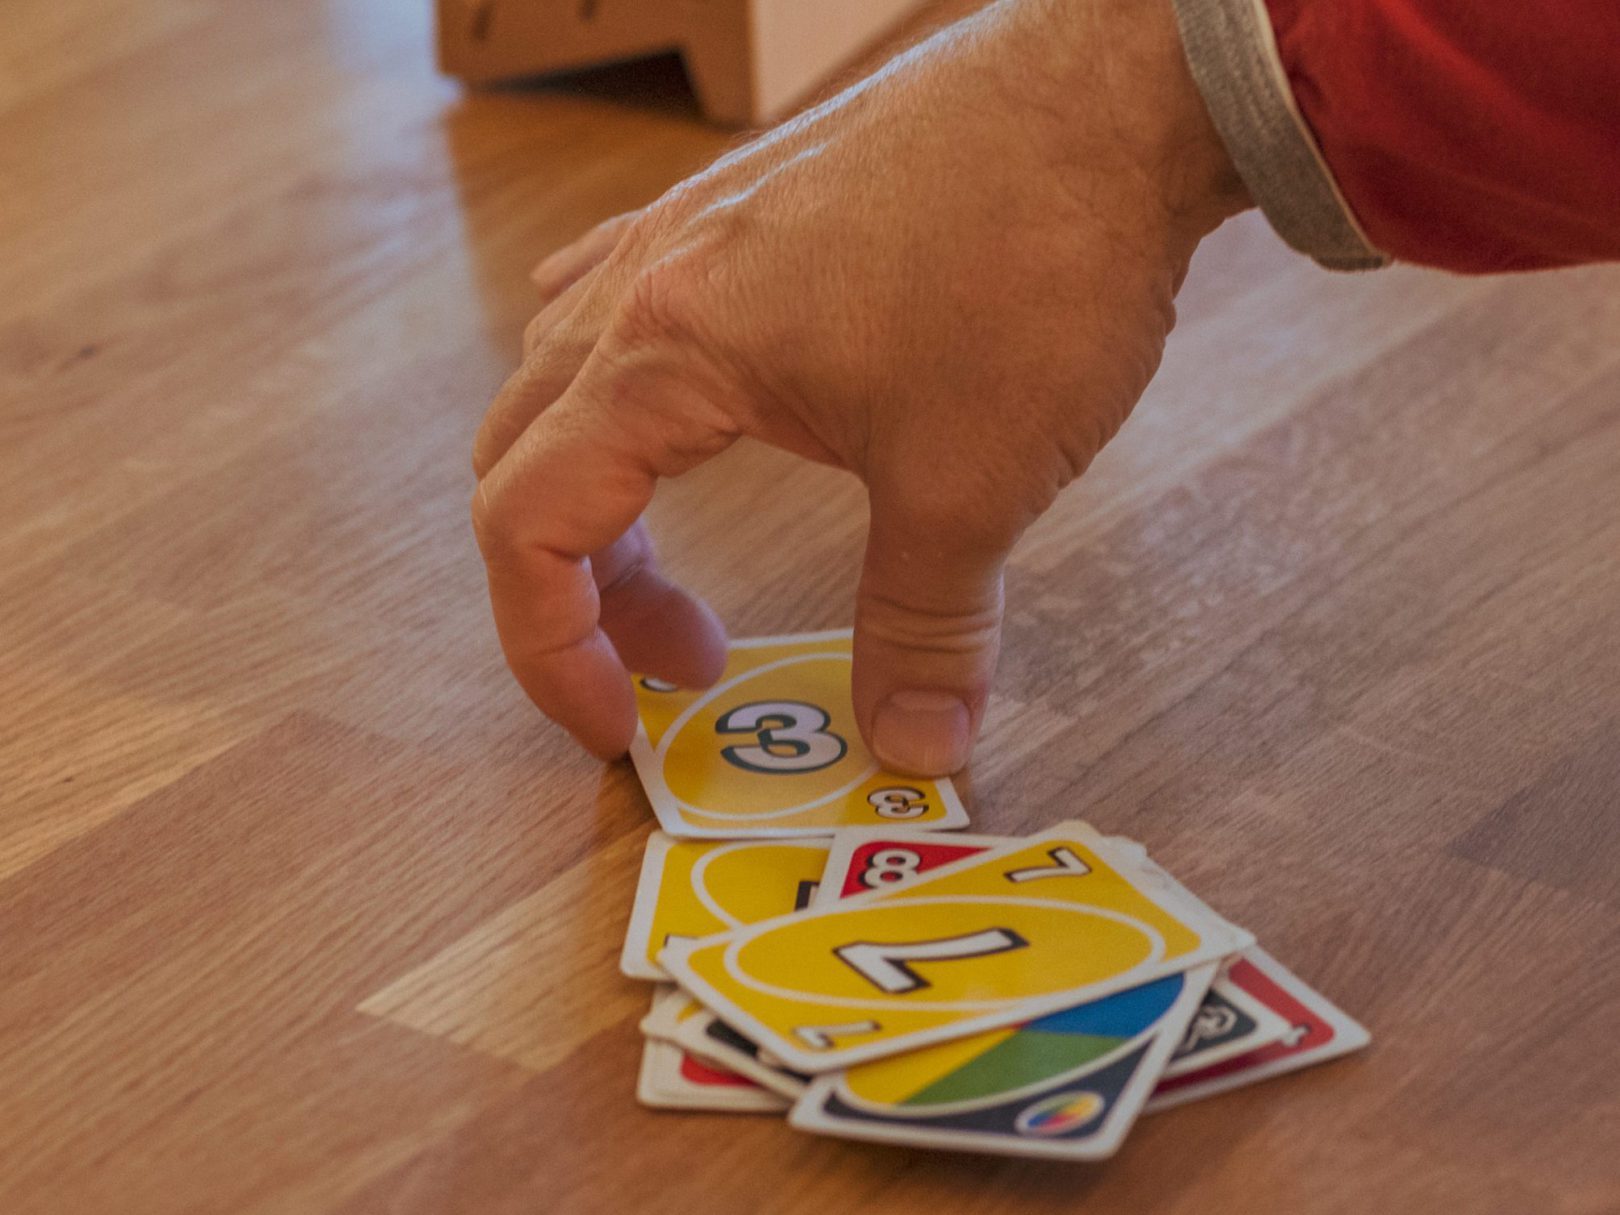 Eine Person greift nach Uno-Spielkarten, die auf einem Tisch verteilt liegen.